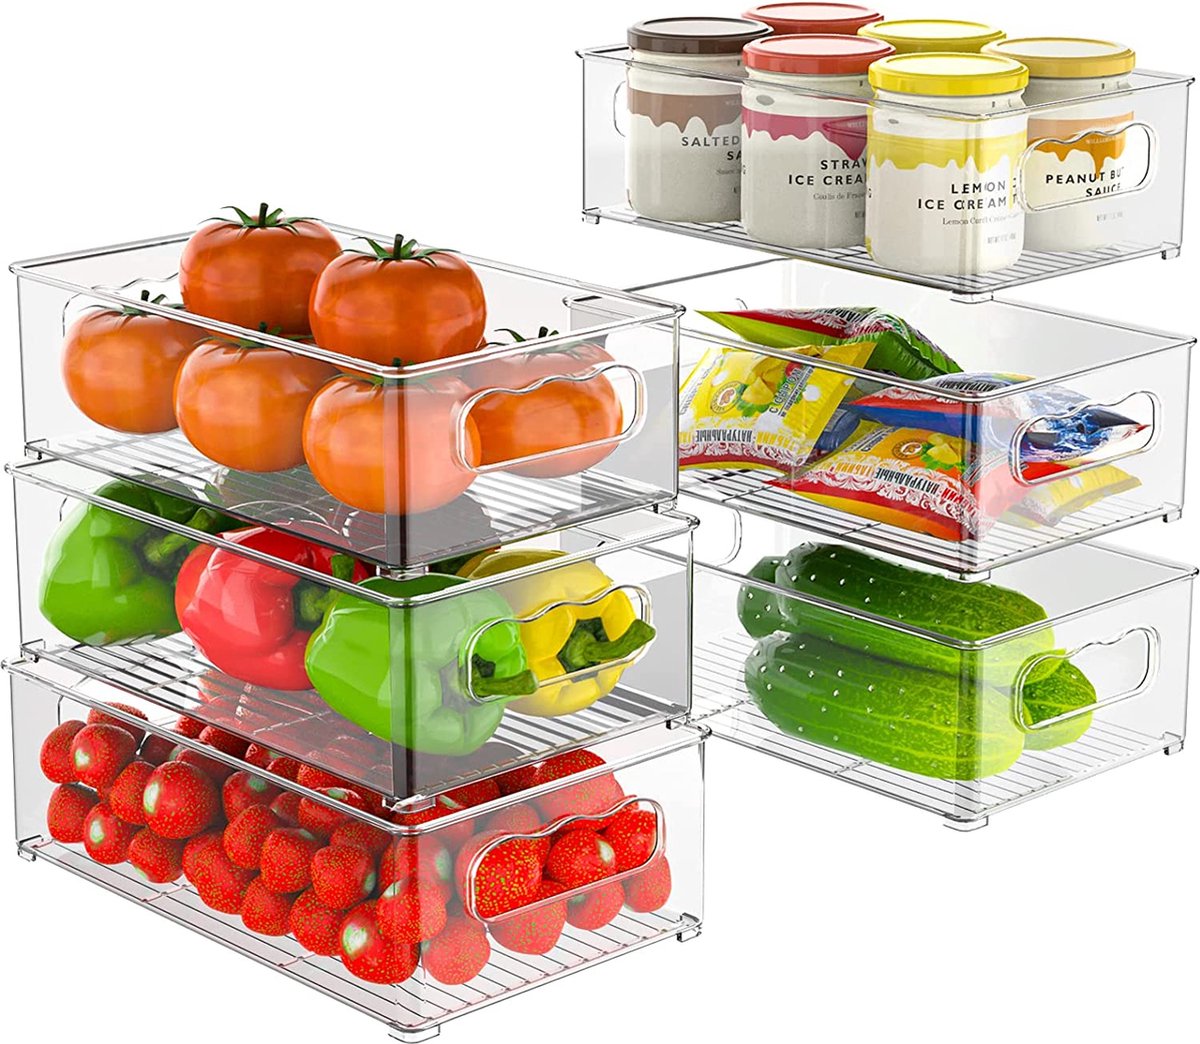 Koelkastorganizer, set van 6 (3 maten), koelkastorganizer, keukenorganizer voor eetkamer, vriezer, kast, lade, kantoor, BPA-vrij